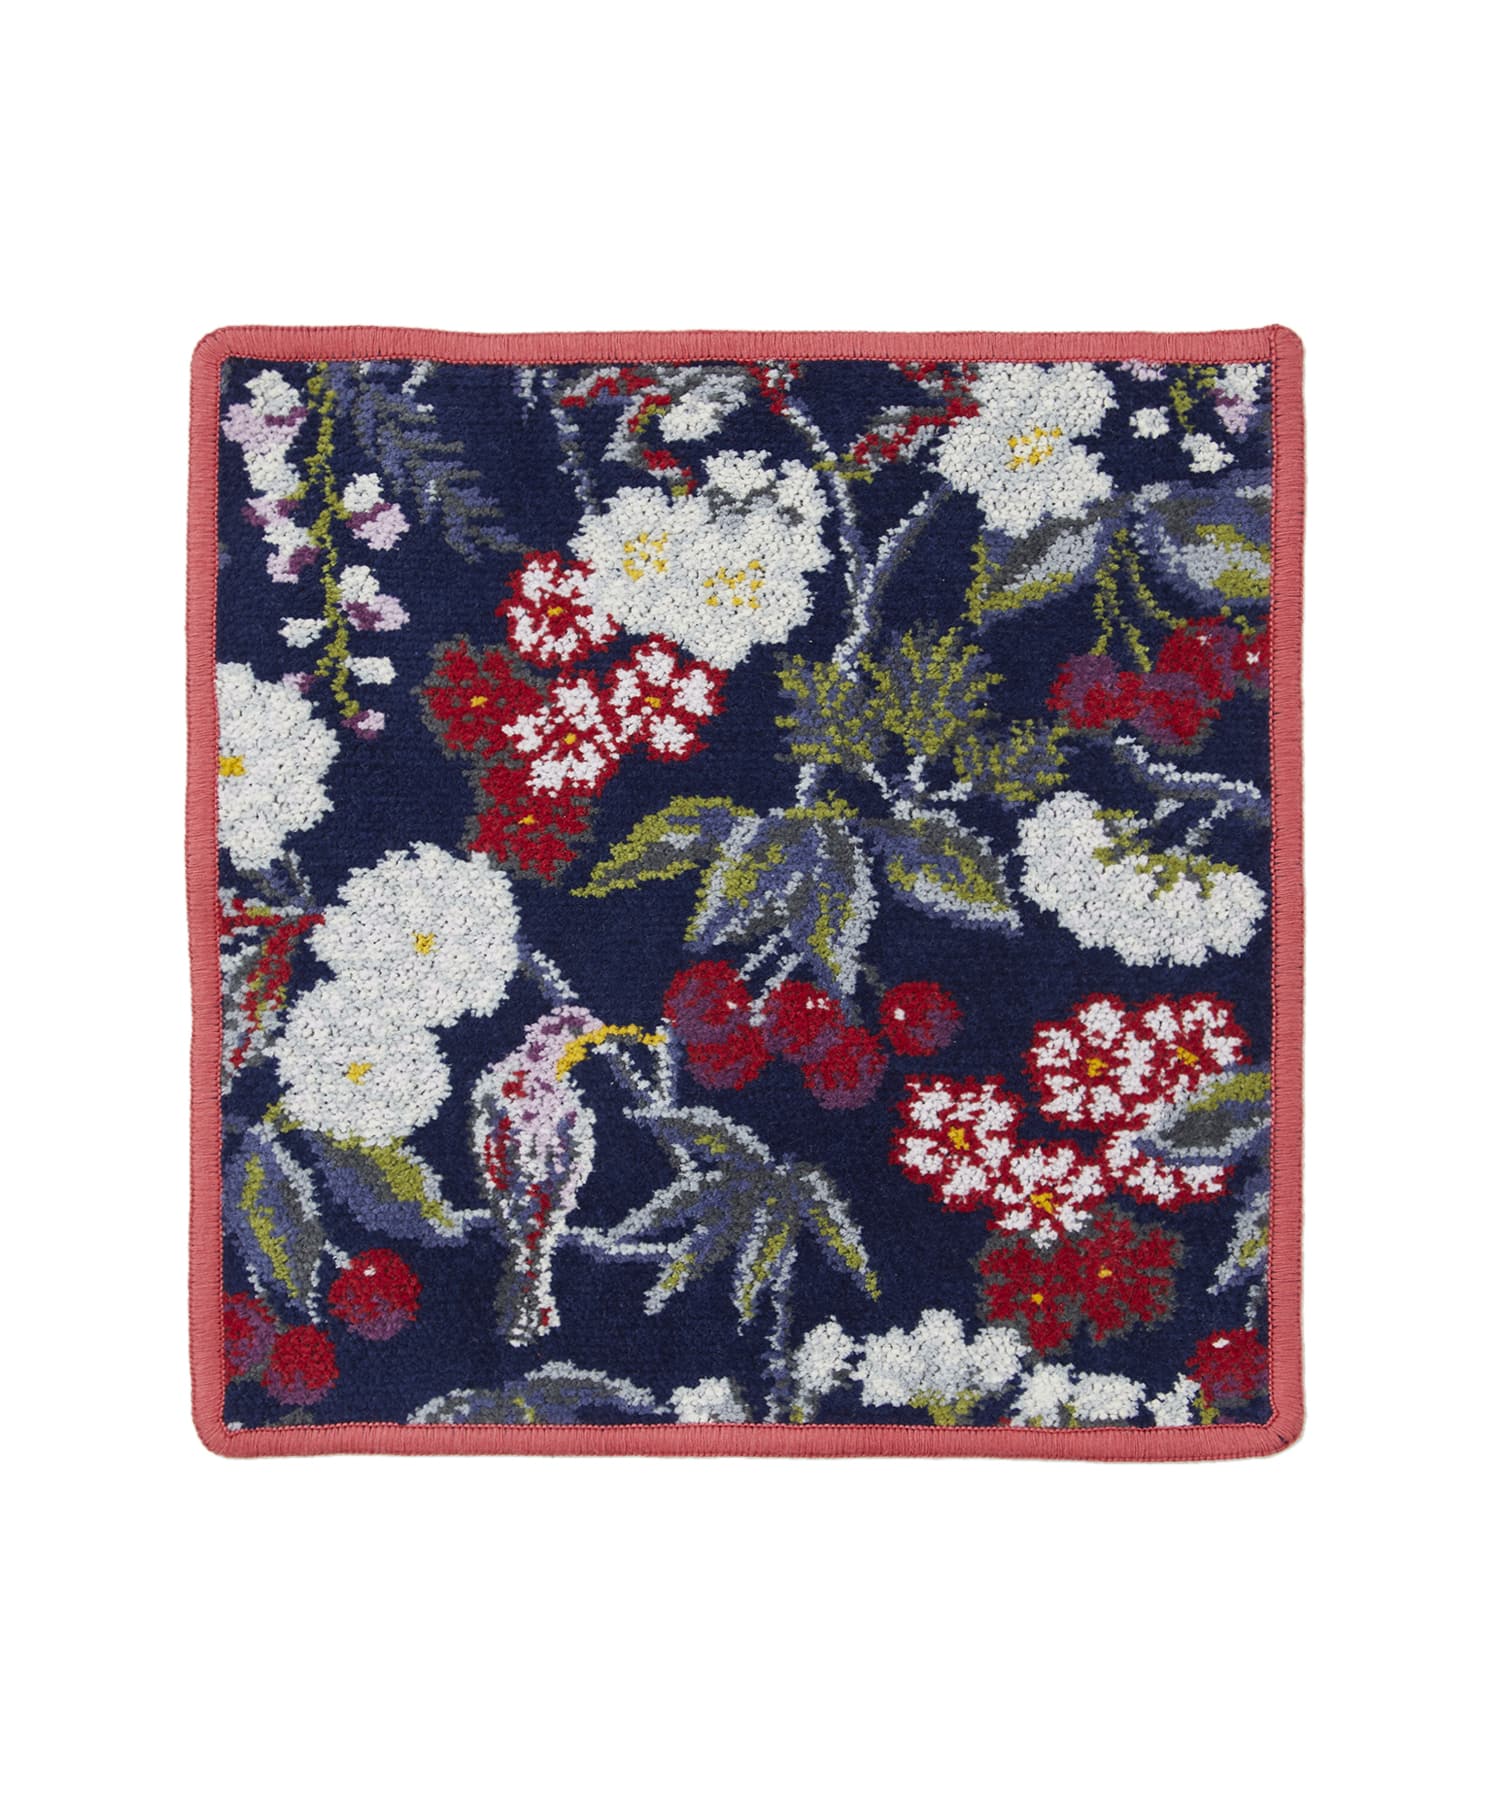 FEILER × KEITAMARUYAMA Botanical Cherry Handkerchief